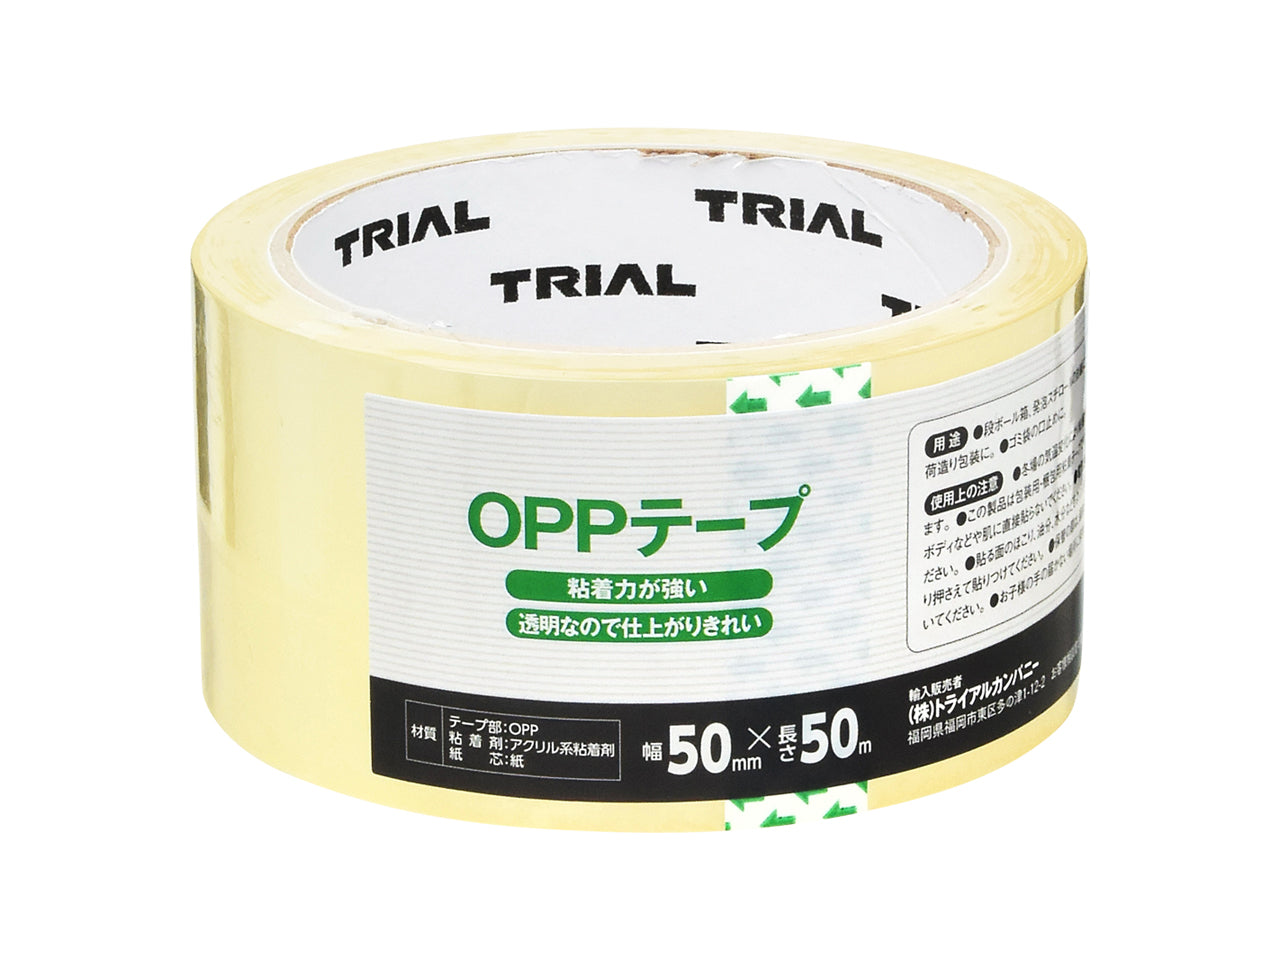 オフィス用品OPPテープ 透明 テープ 長さ50m (カッター有り12巻き入り×24セット)